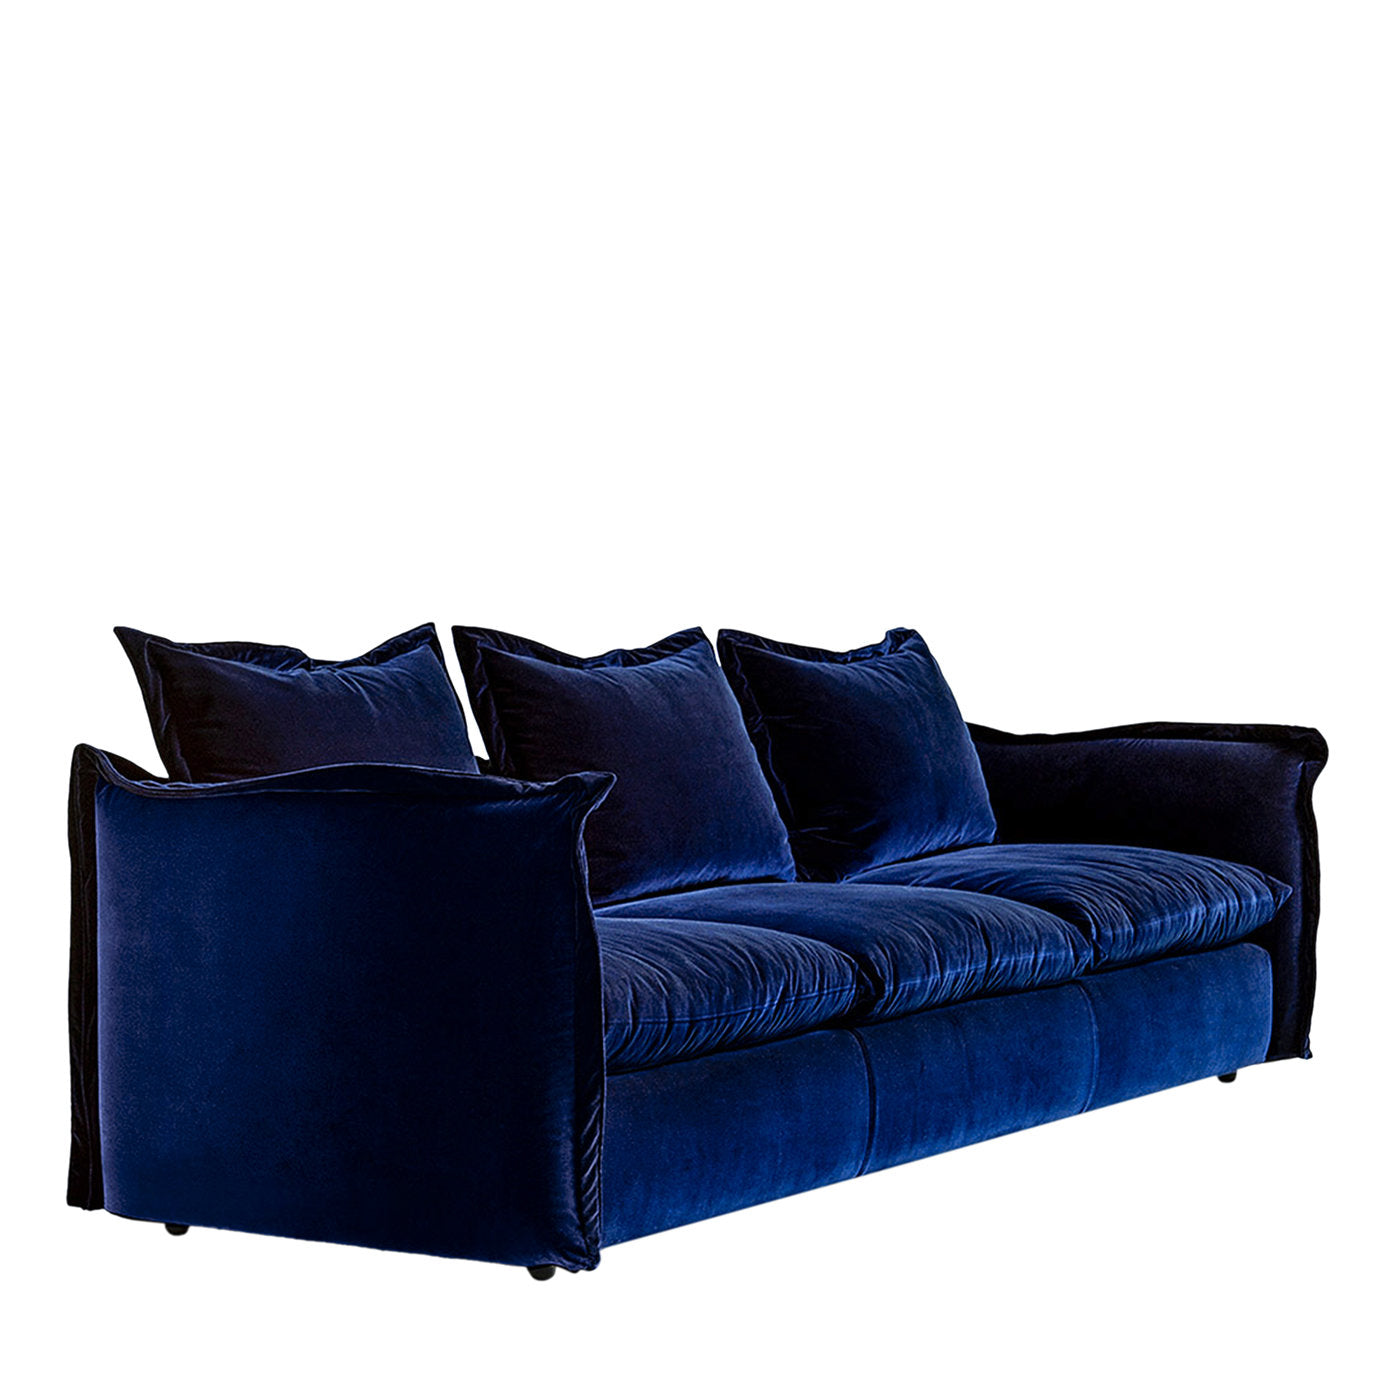 Mitternachtsblaues Strick-Sofa von Enrico Cesana - Hauptansicht